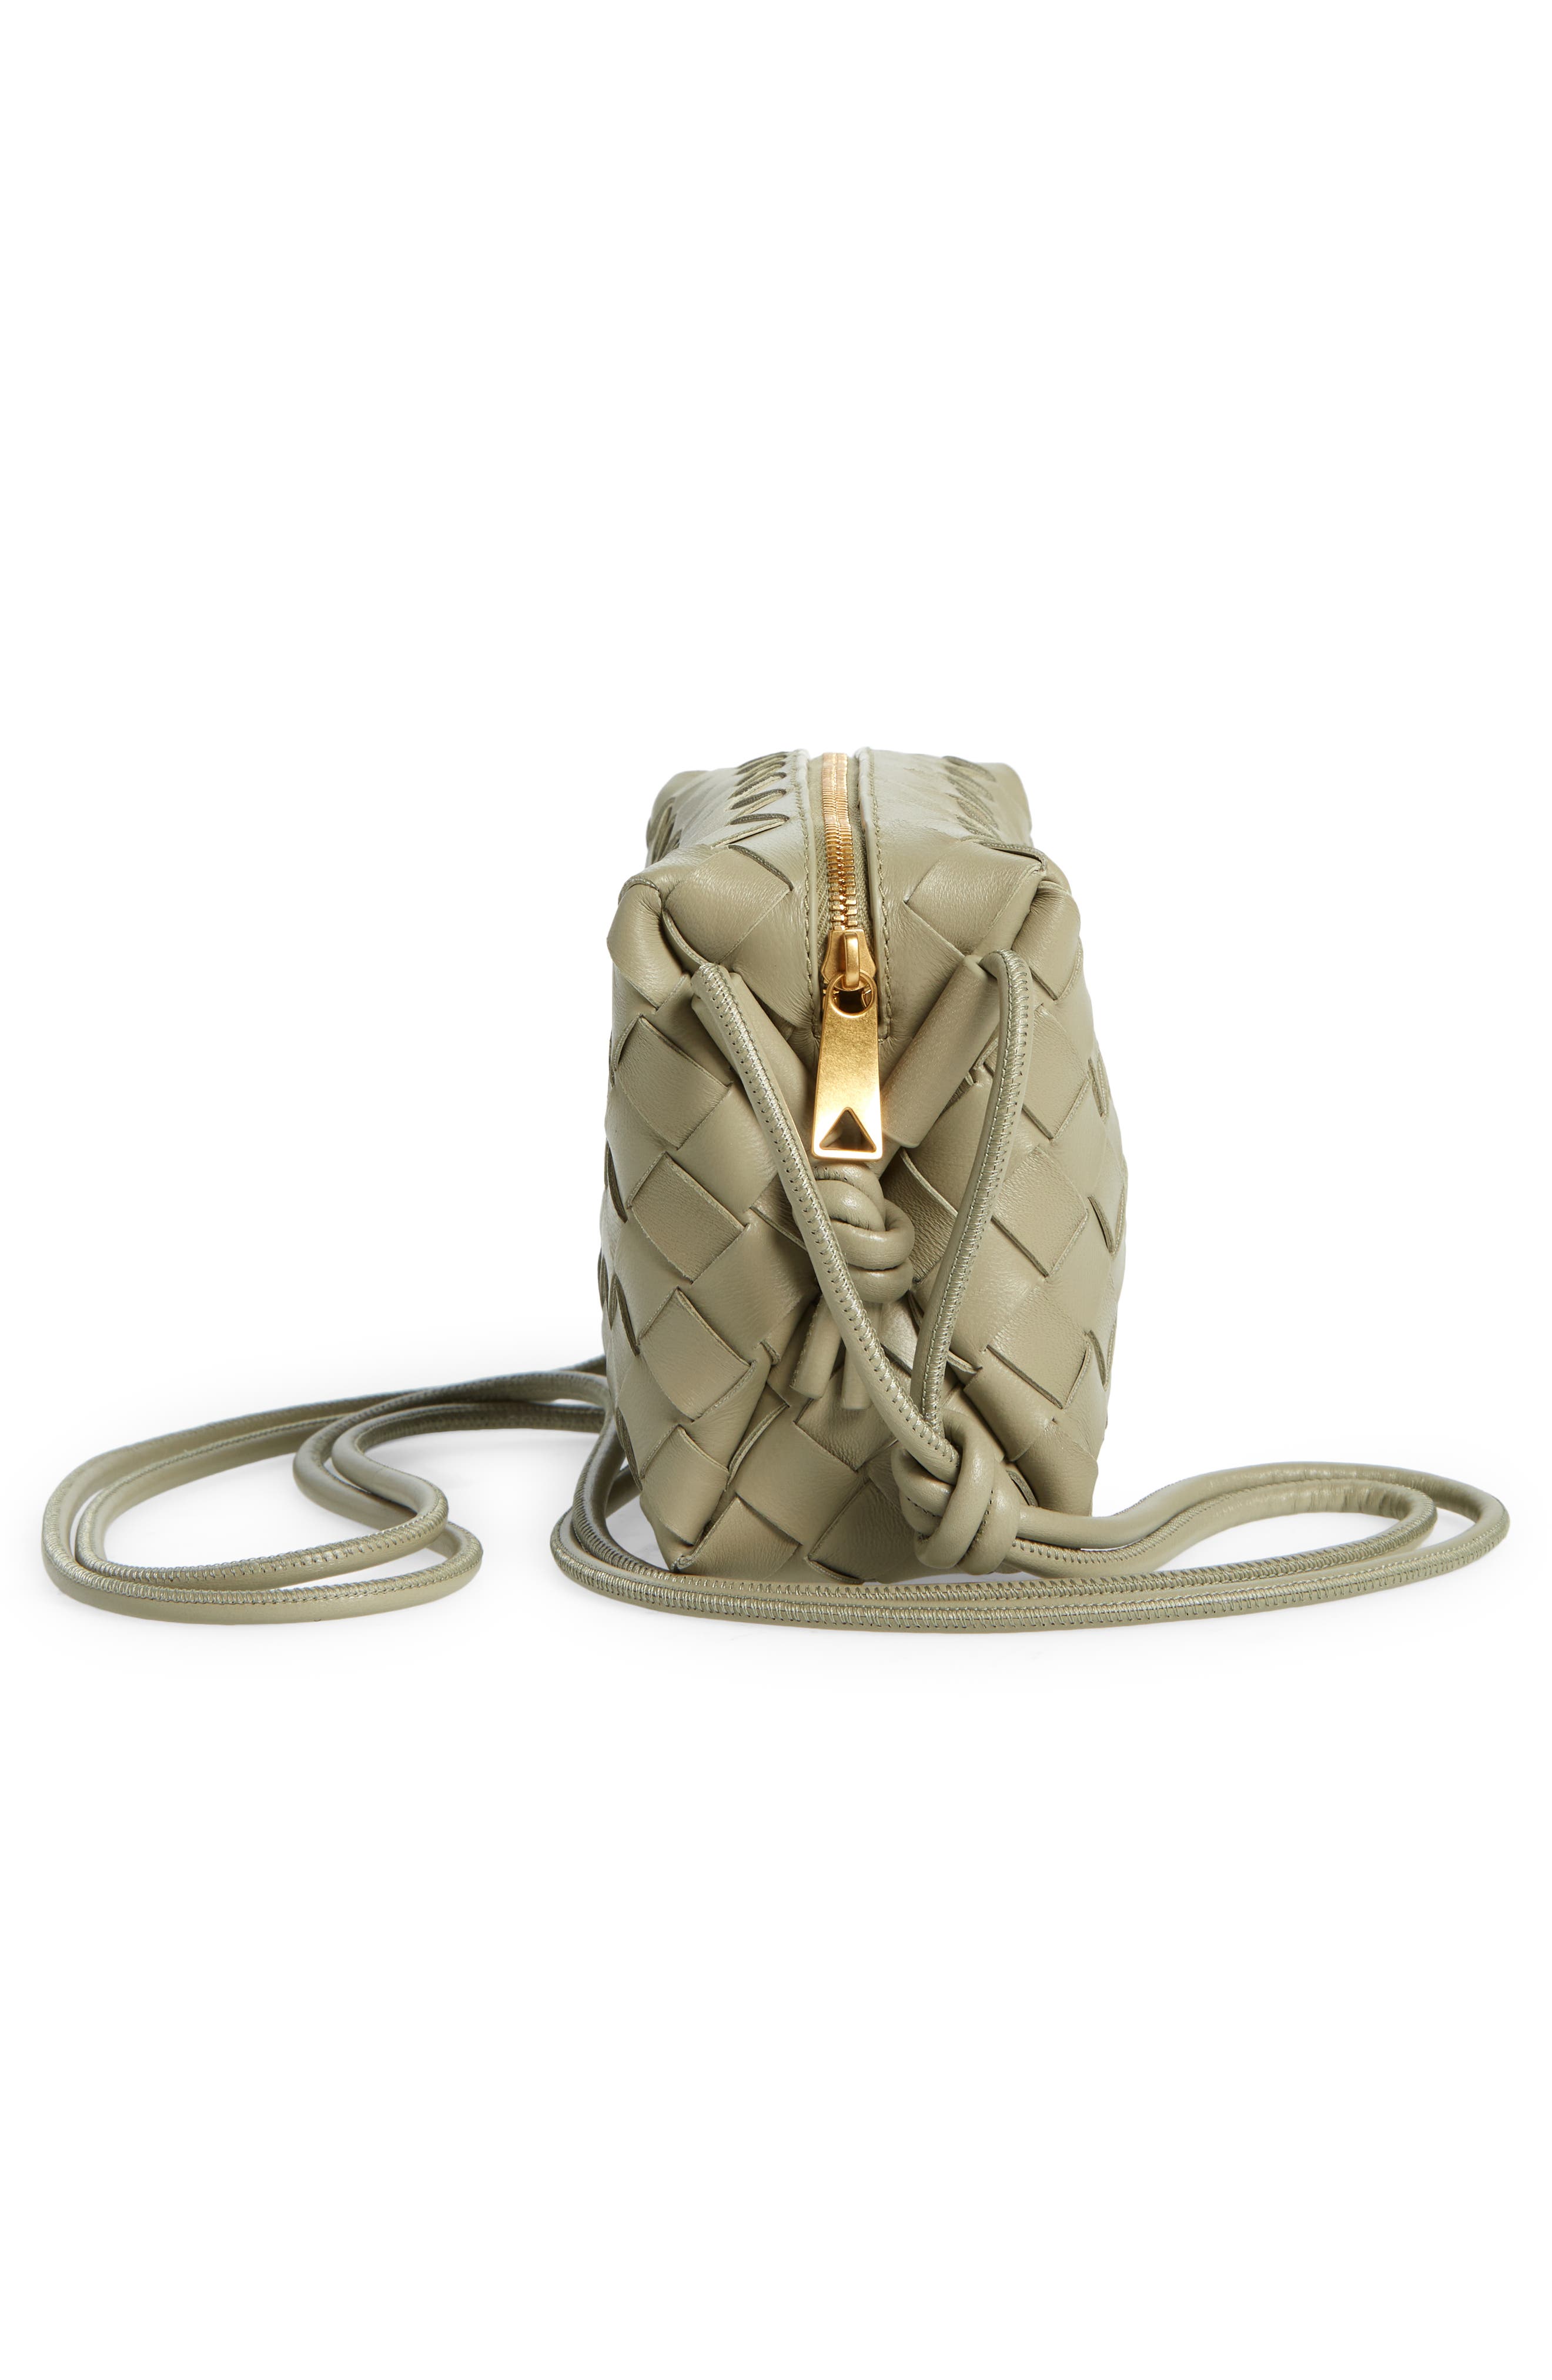 Bottega Veneta Mini Intrecciato Leather Crossbody Bag in 2916 Travertine-Gold